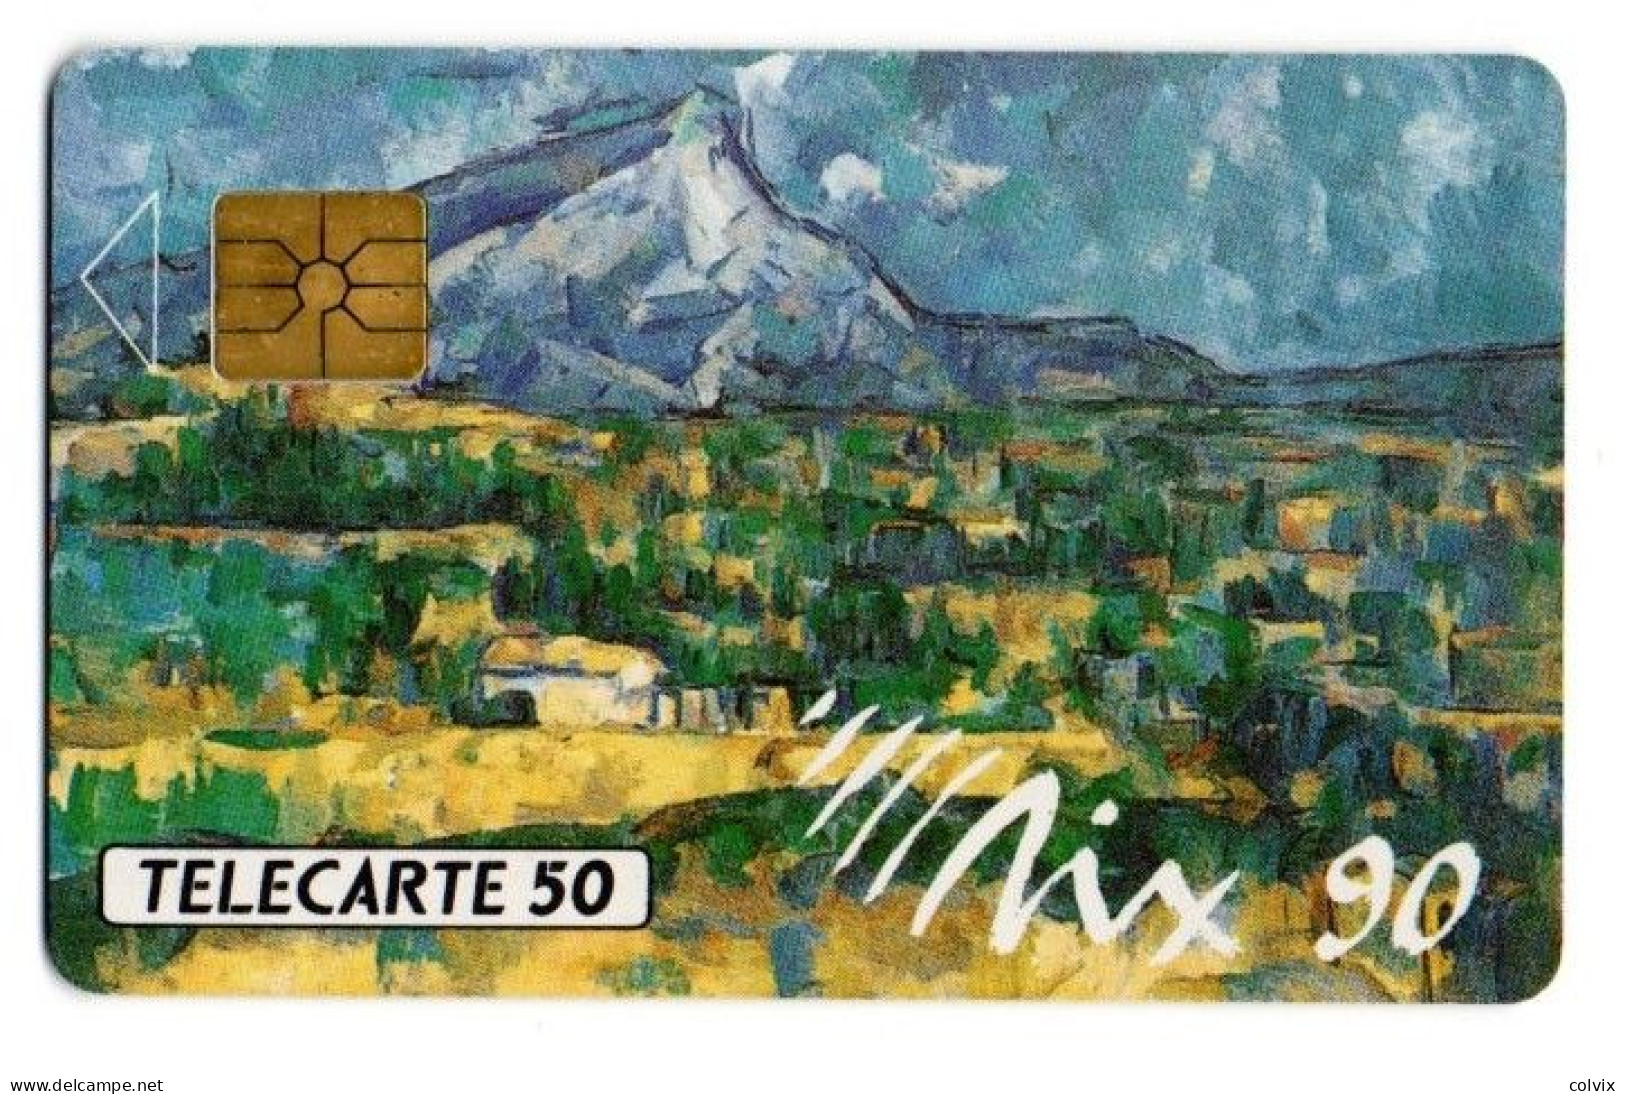 FRANCE TELECARTE D420A AIX90 50U 1000 Ex Date12/1990 Paul Cézanne La Montagne Sainte Victoire - Privées